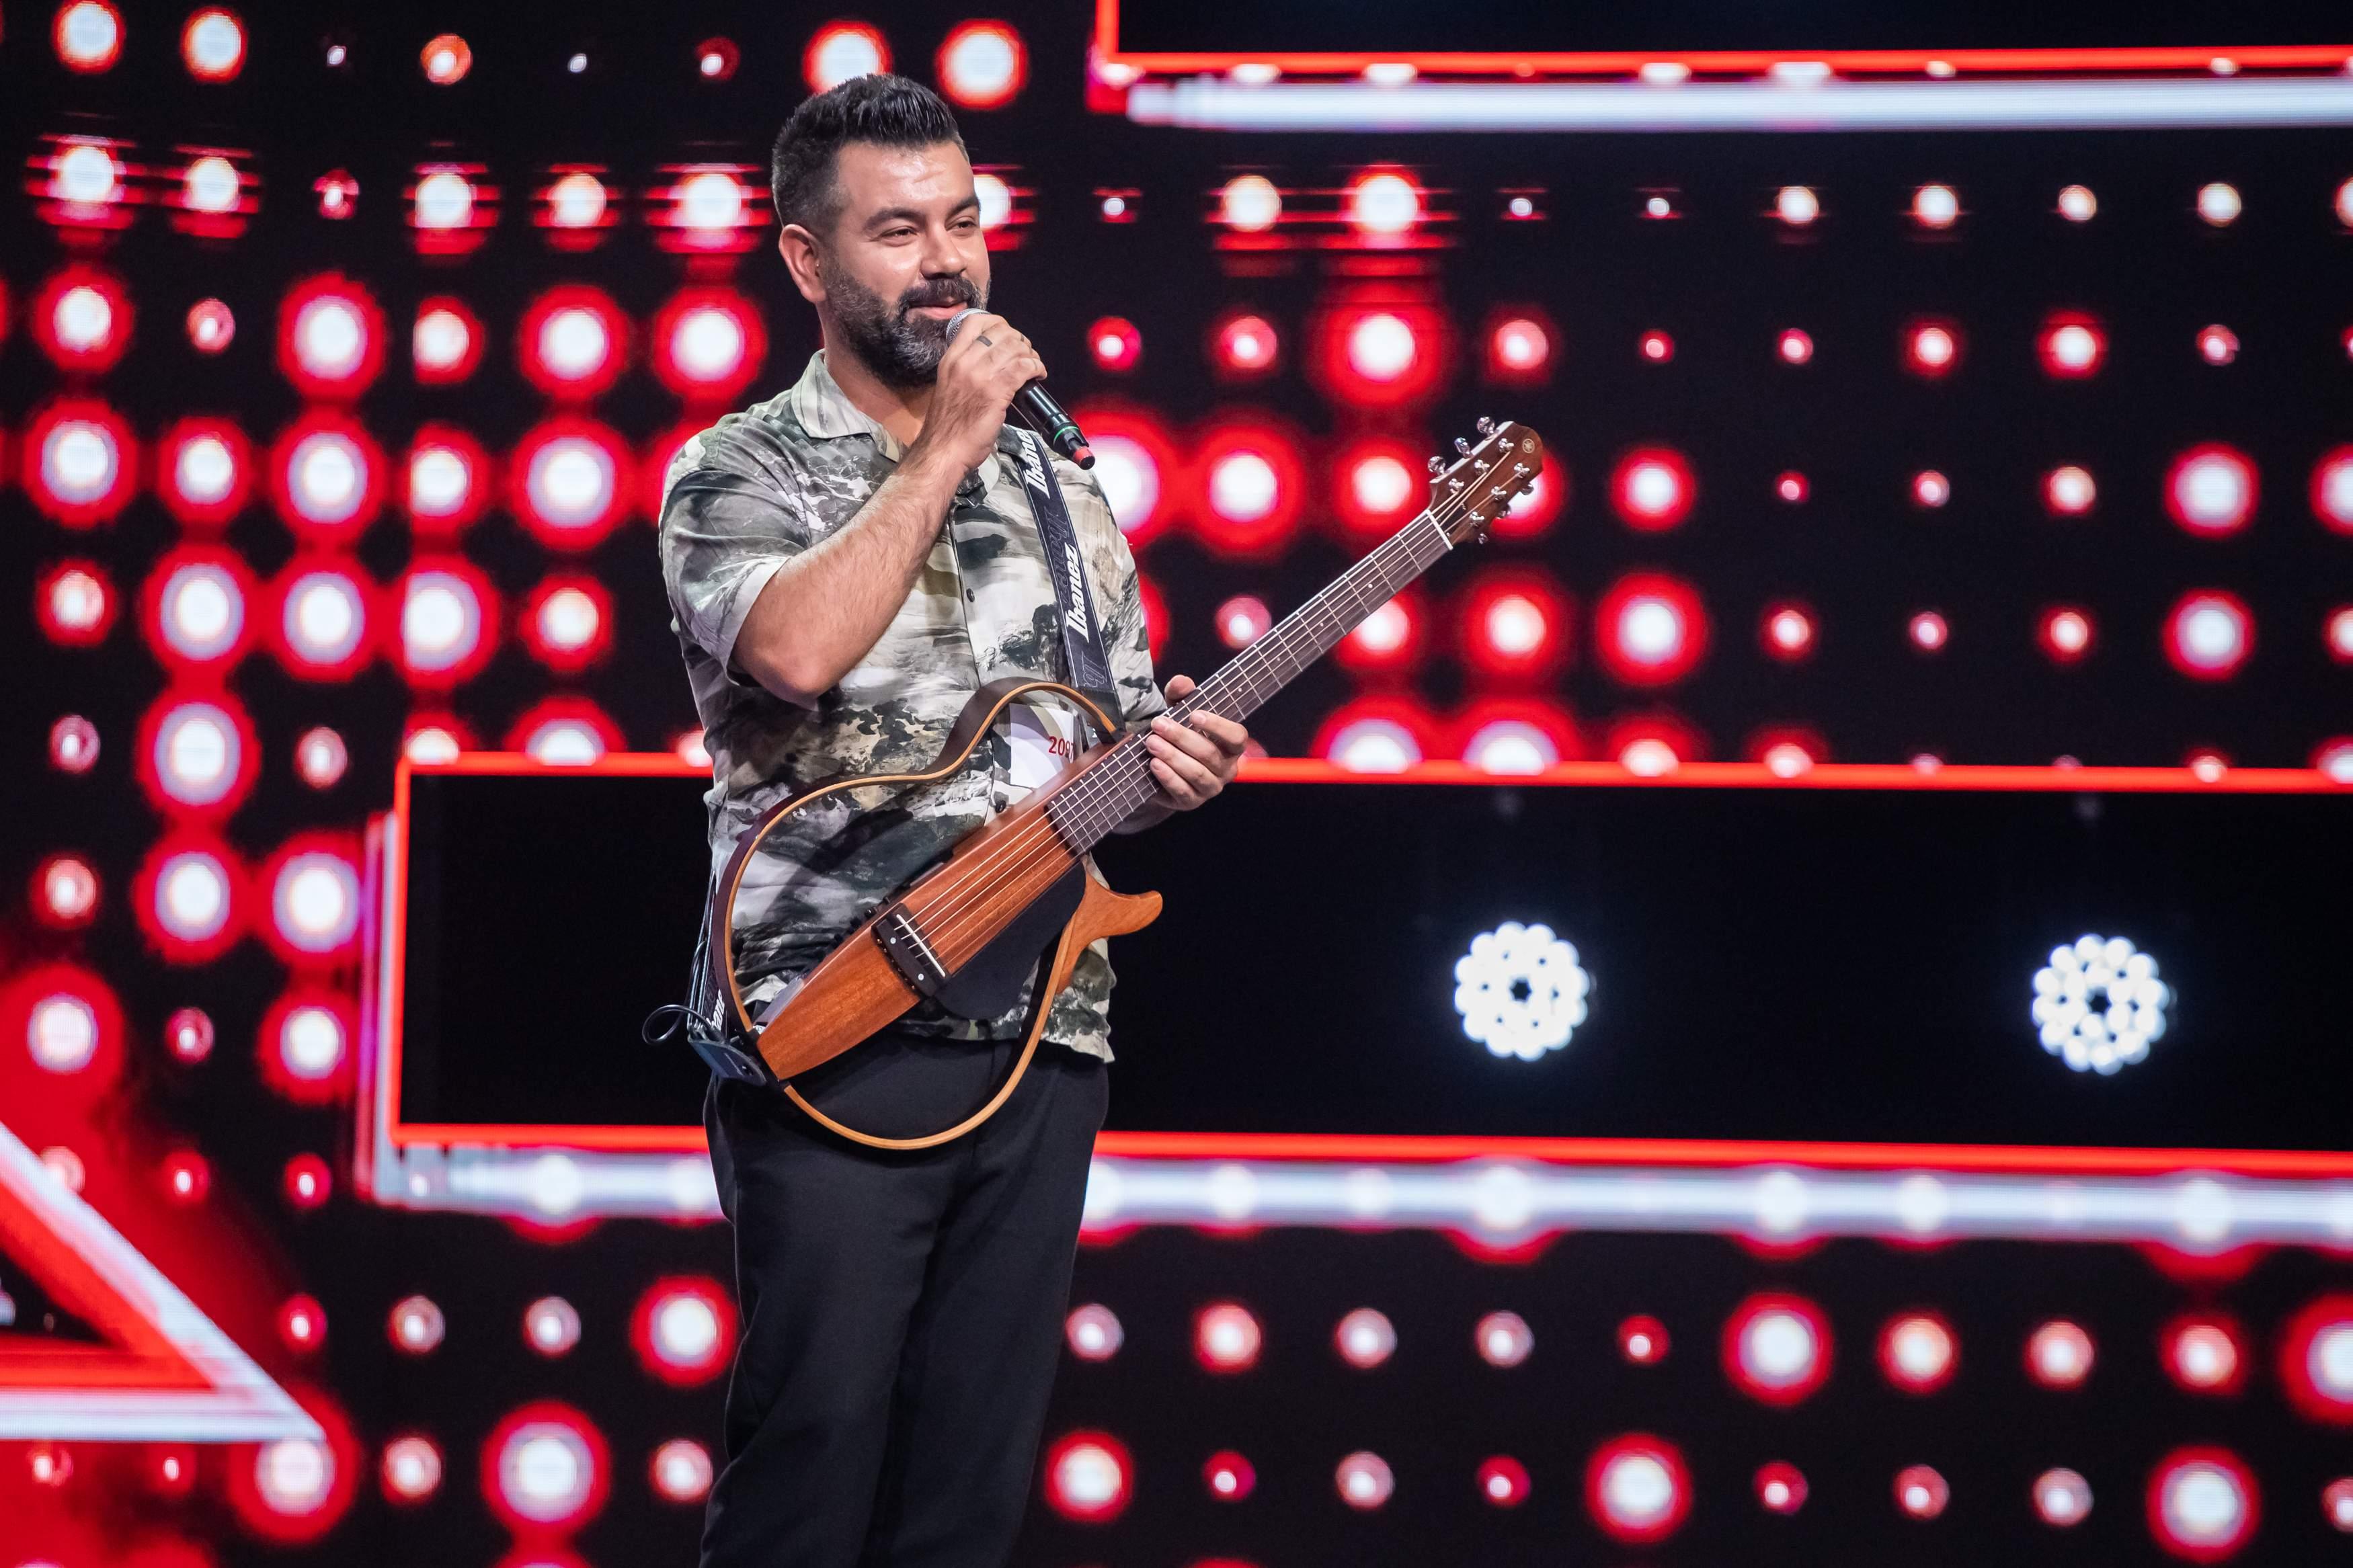 Mehmet Dural: ”Dacă ajung în finala X Factor, aș vrea să cânt o piesă alături de Delia!”